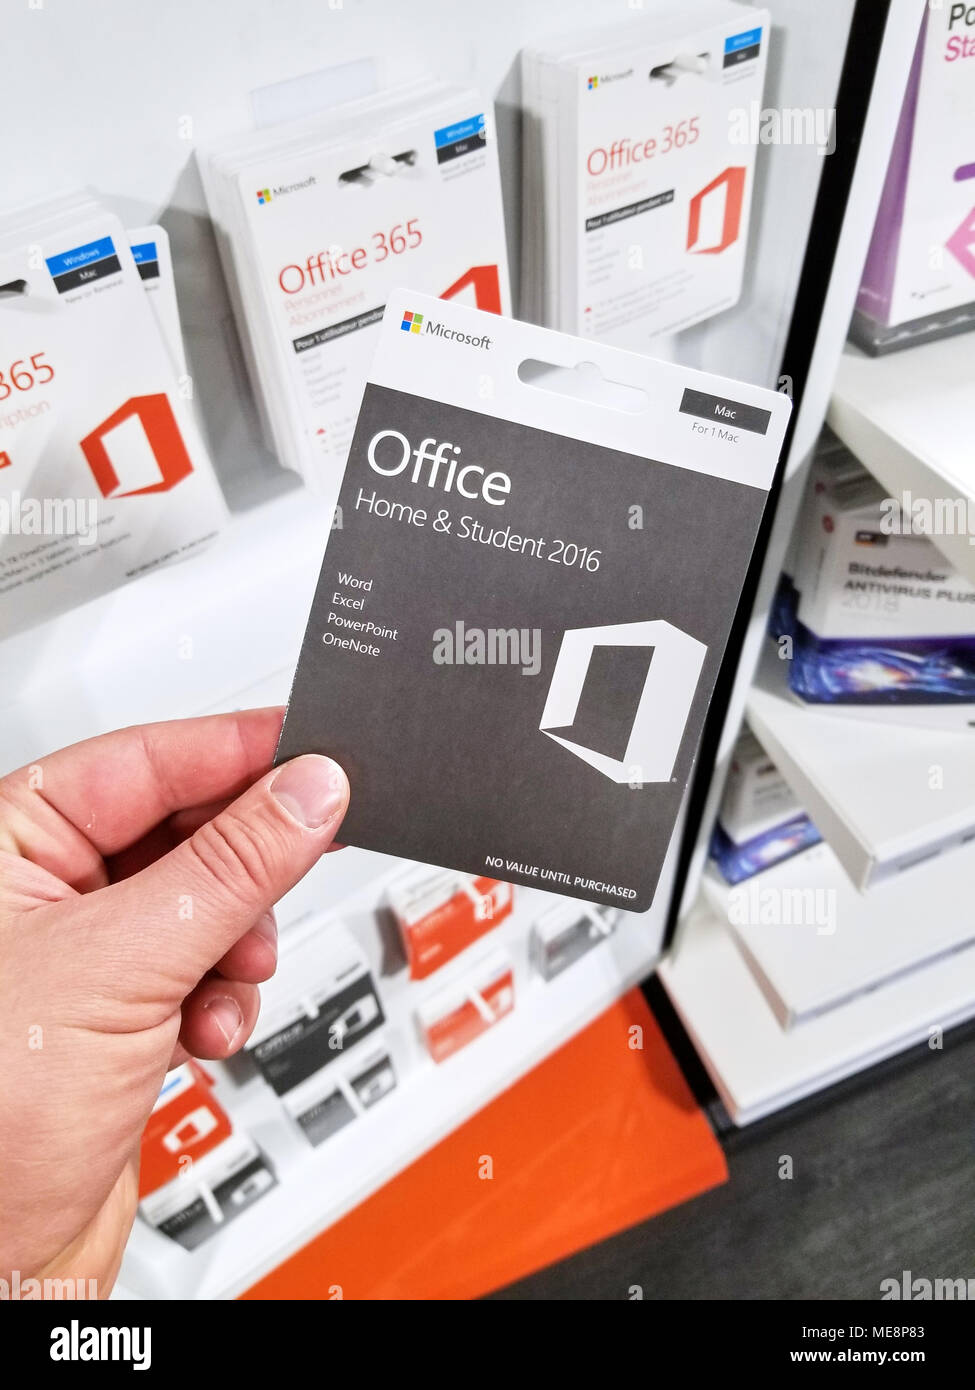 MONTREAL, KANADA - 10. MÄRZ 2018: Microsoft Office 365 Student Abonnement Karte in einer Hand. Office 365 ist der Markenname Microsoft verwendet für eine Gruppe o Stockfoto